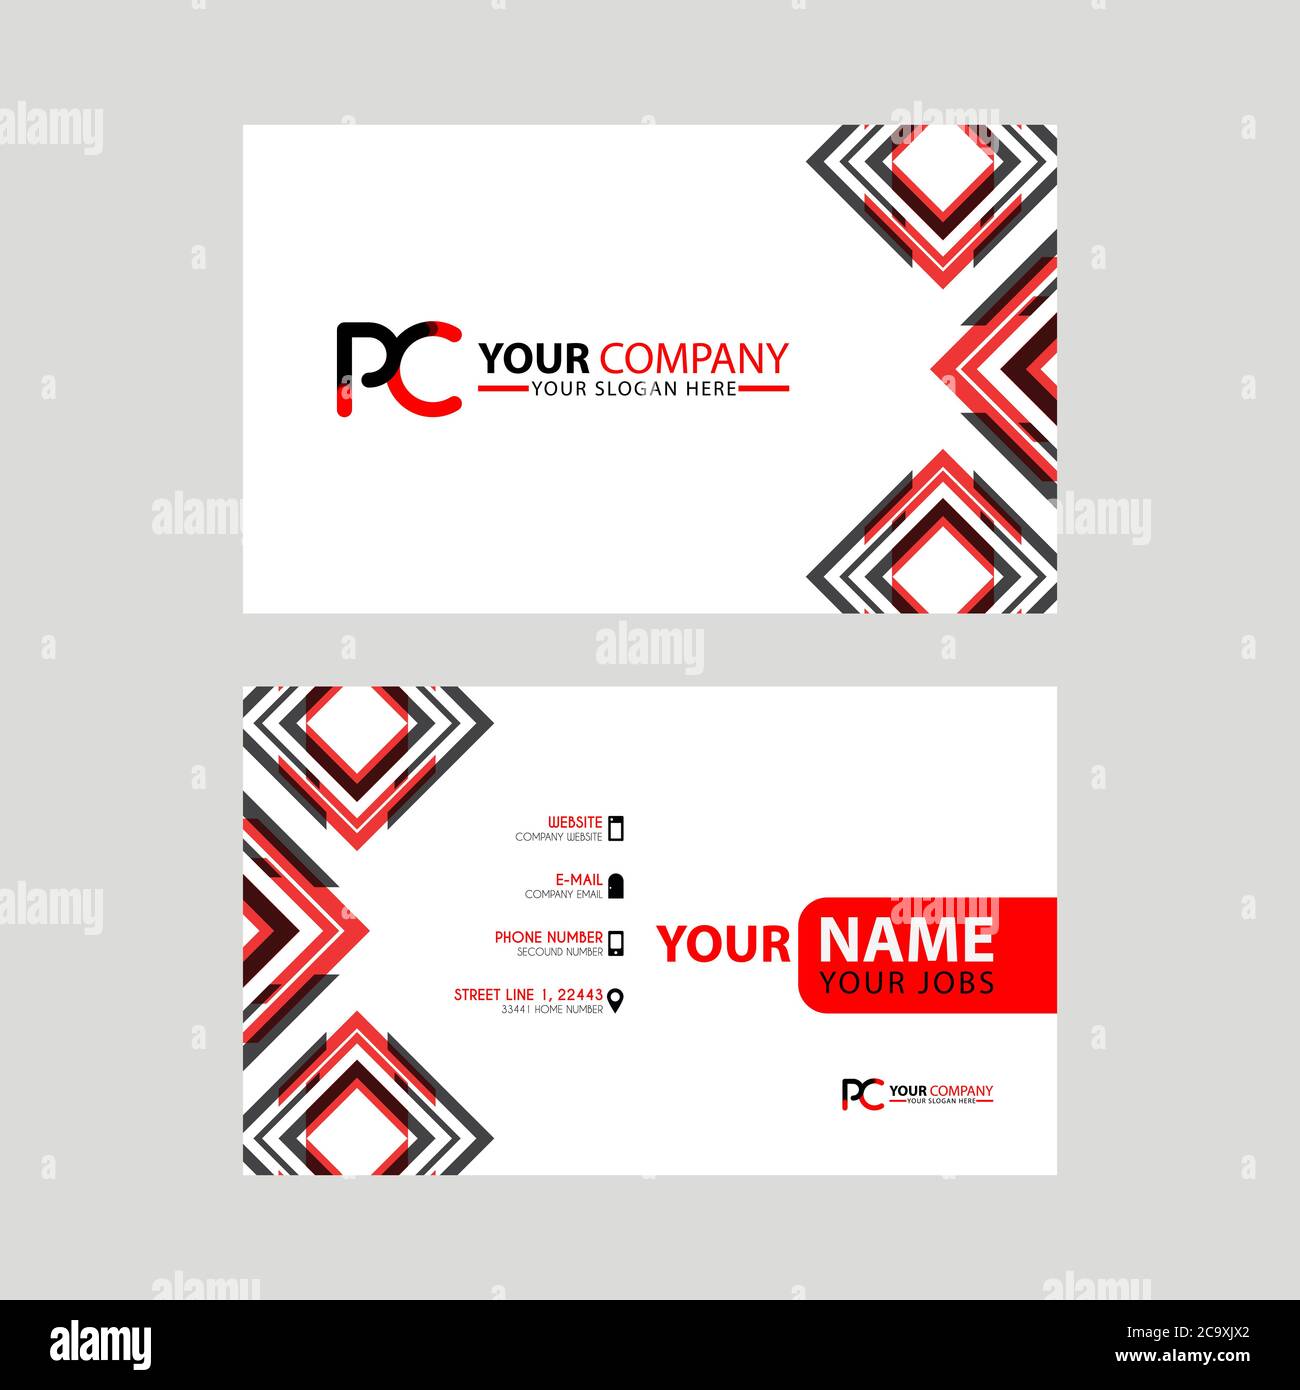 Moderni modelli di biglietti da visita, con logo PC Letter e design  orizzontale e colori rosso e nero. Modello logo CP Immagine e Vettoriale -  Alamy